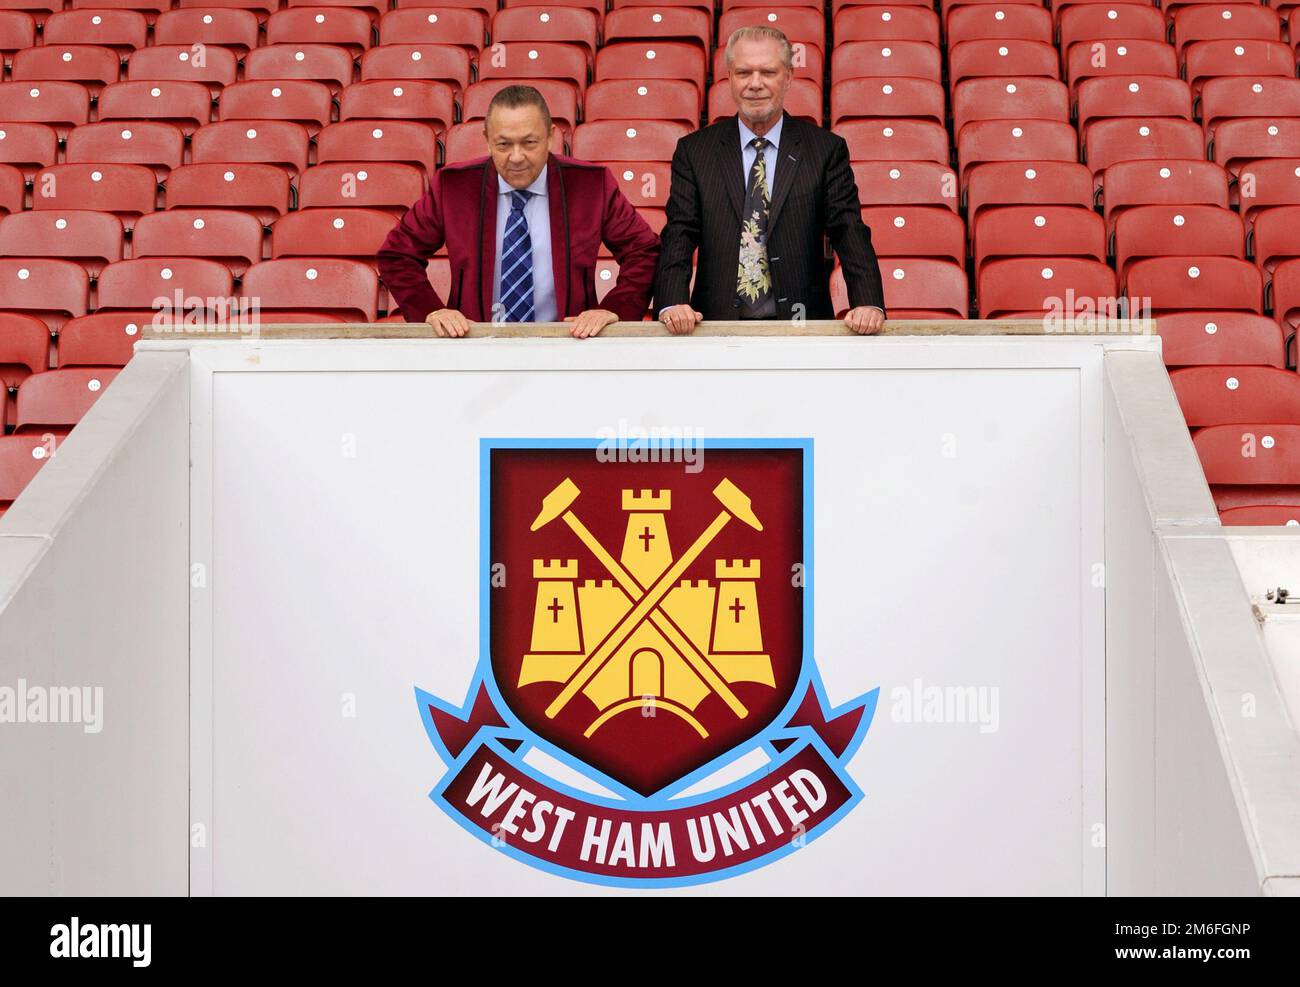 Foto del file datata 19-01-2010 dei proprietari del New West Ham United David Sullivan (a sinistra) e David Gold. David Gold, copresidente del West Ham, è morto a 86 anni a seguito di una “breve malattia”, come ha annunciato il club della Premier League. Data di emissione: Mercoledì 4 gennaio 2023. Foto Stock